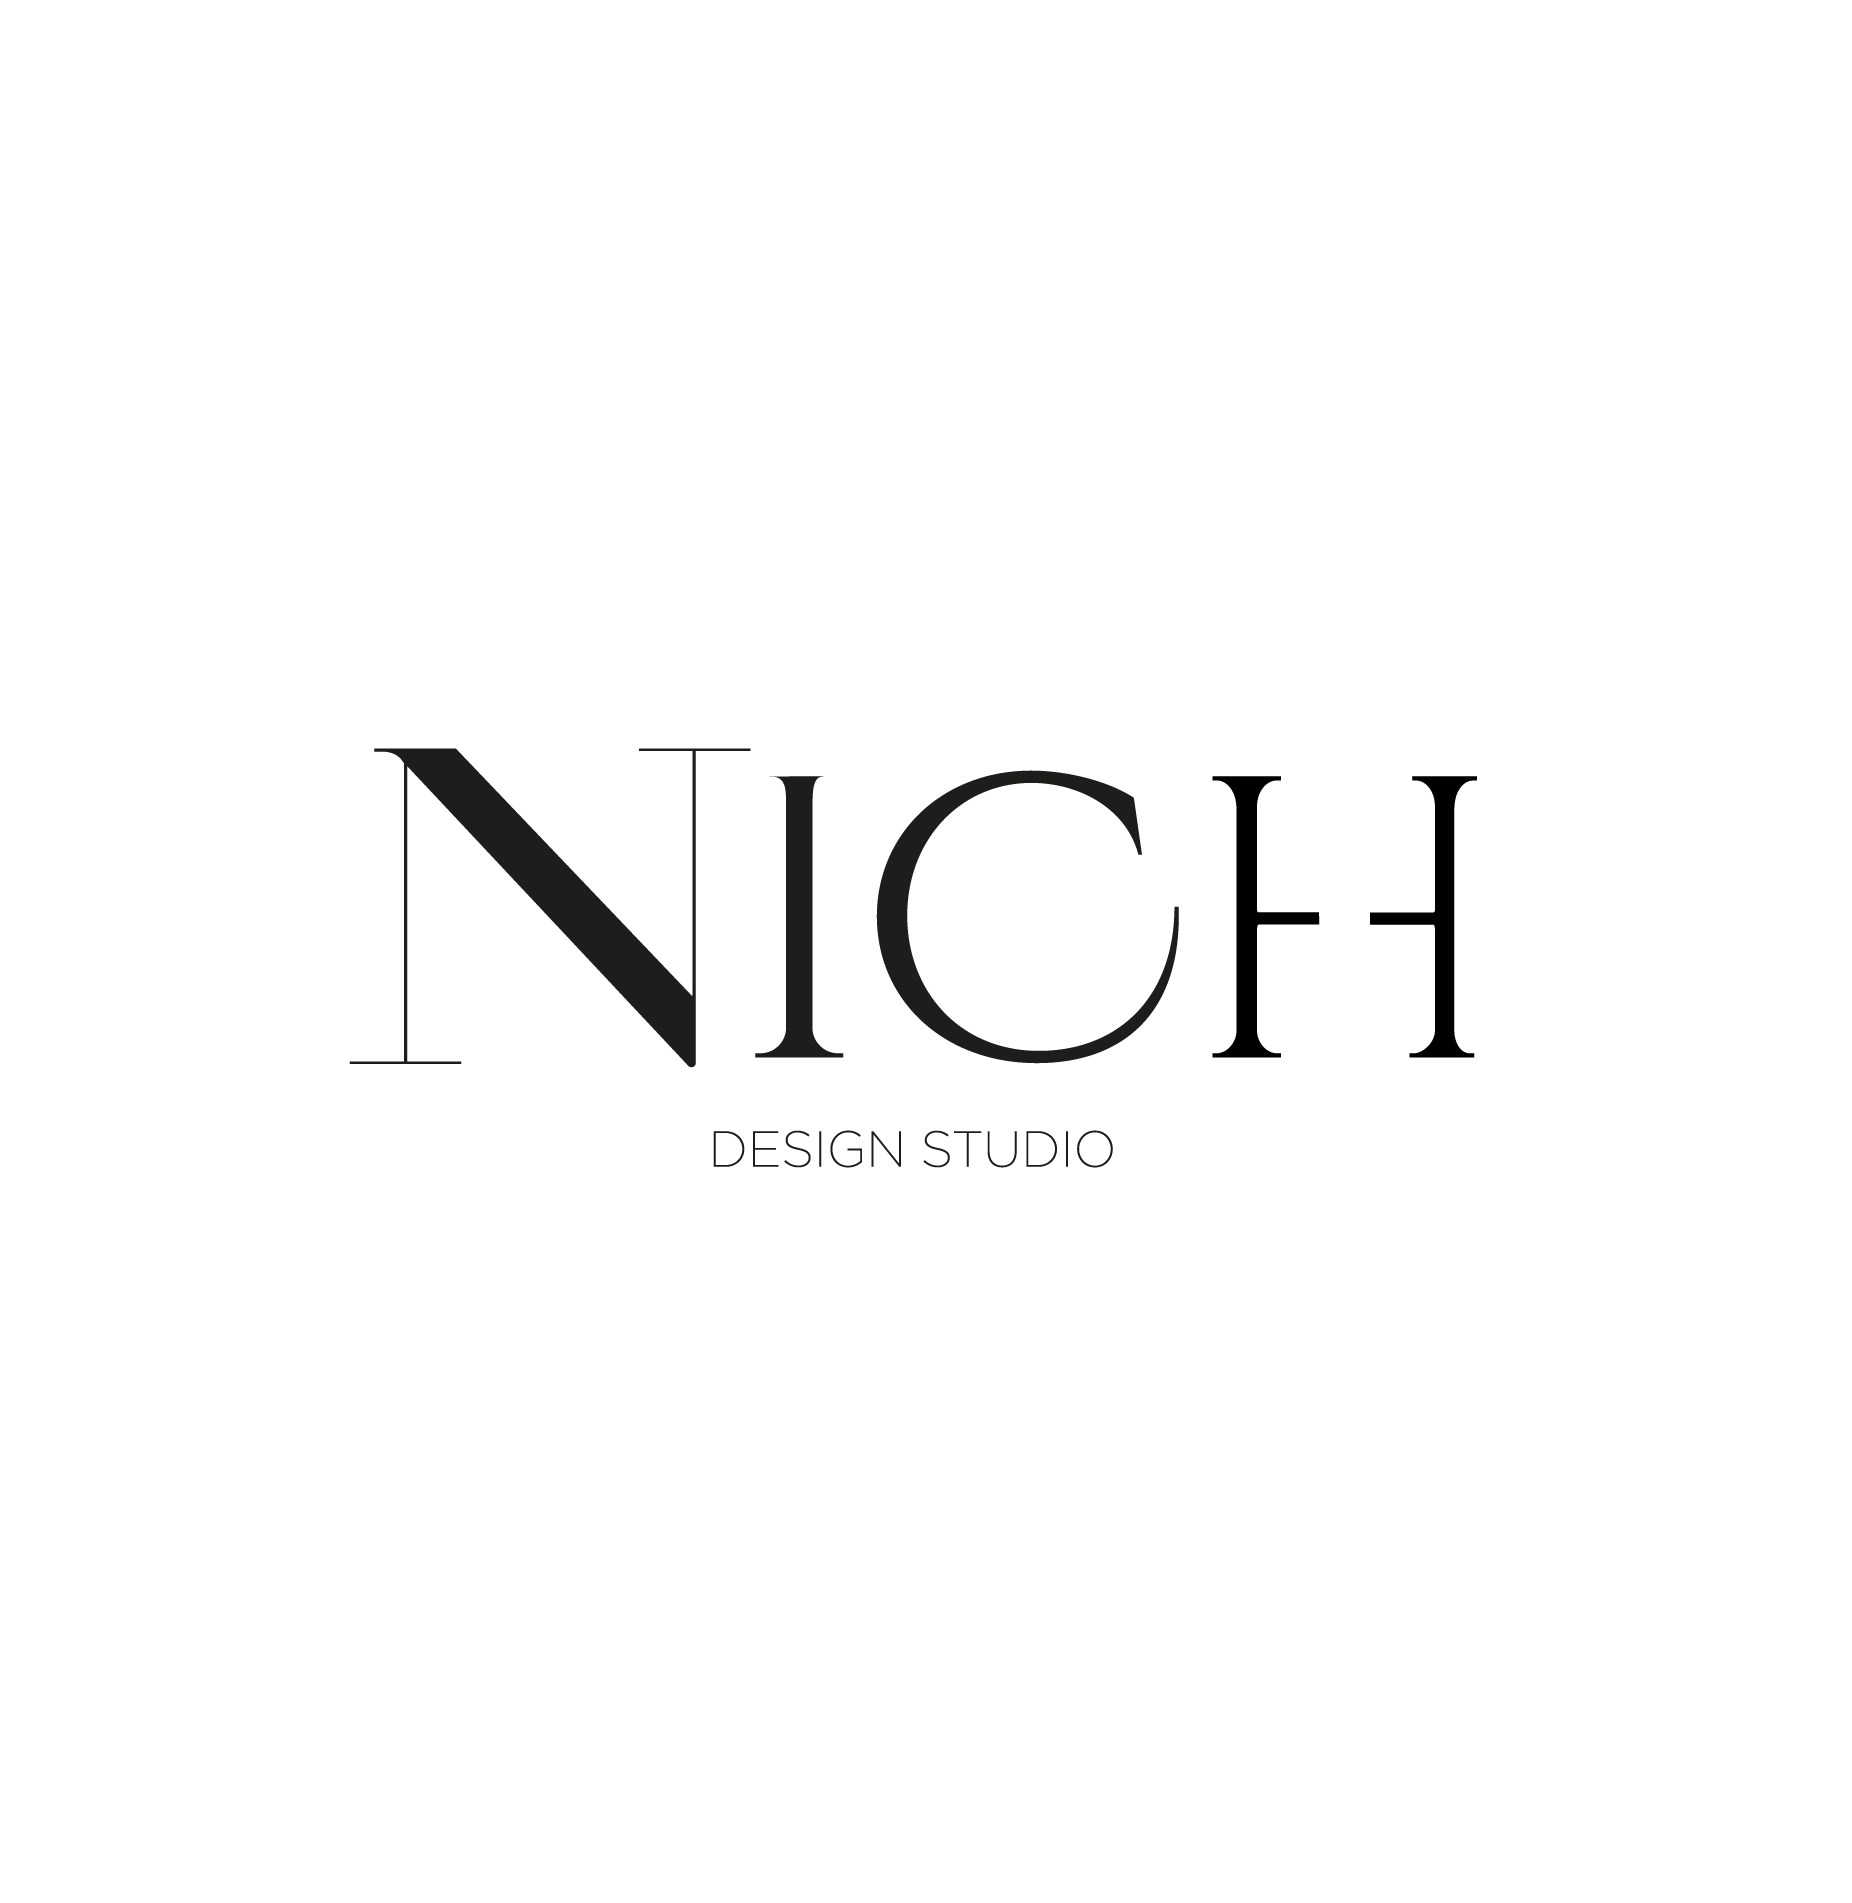 Nich Design Studio